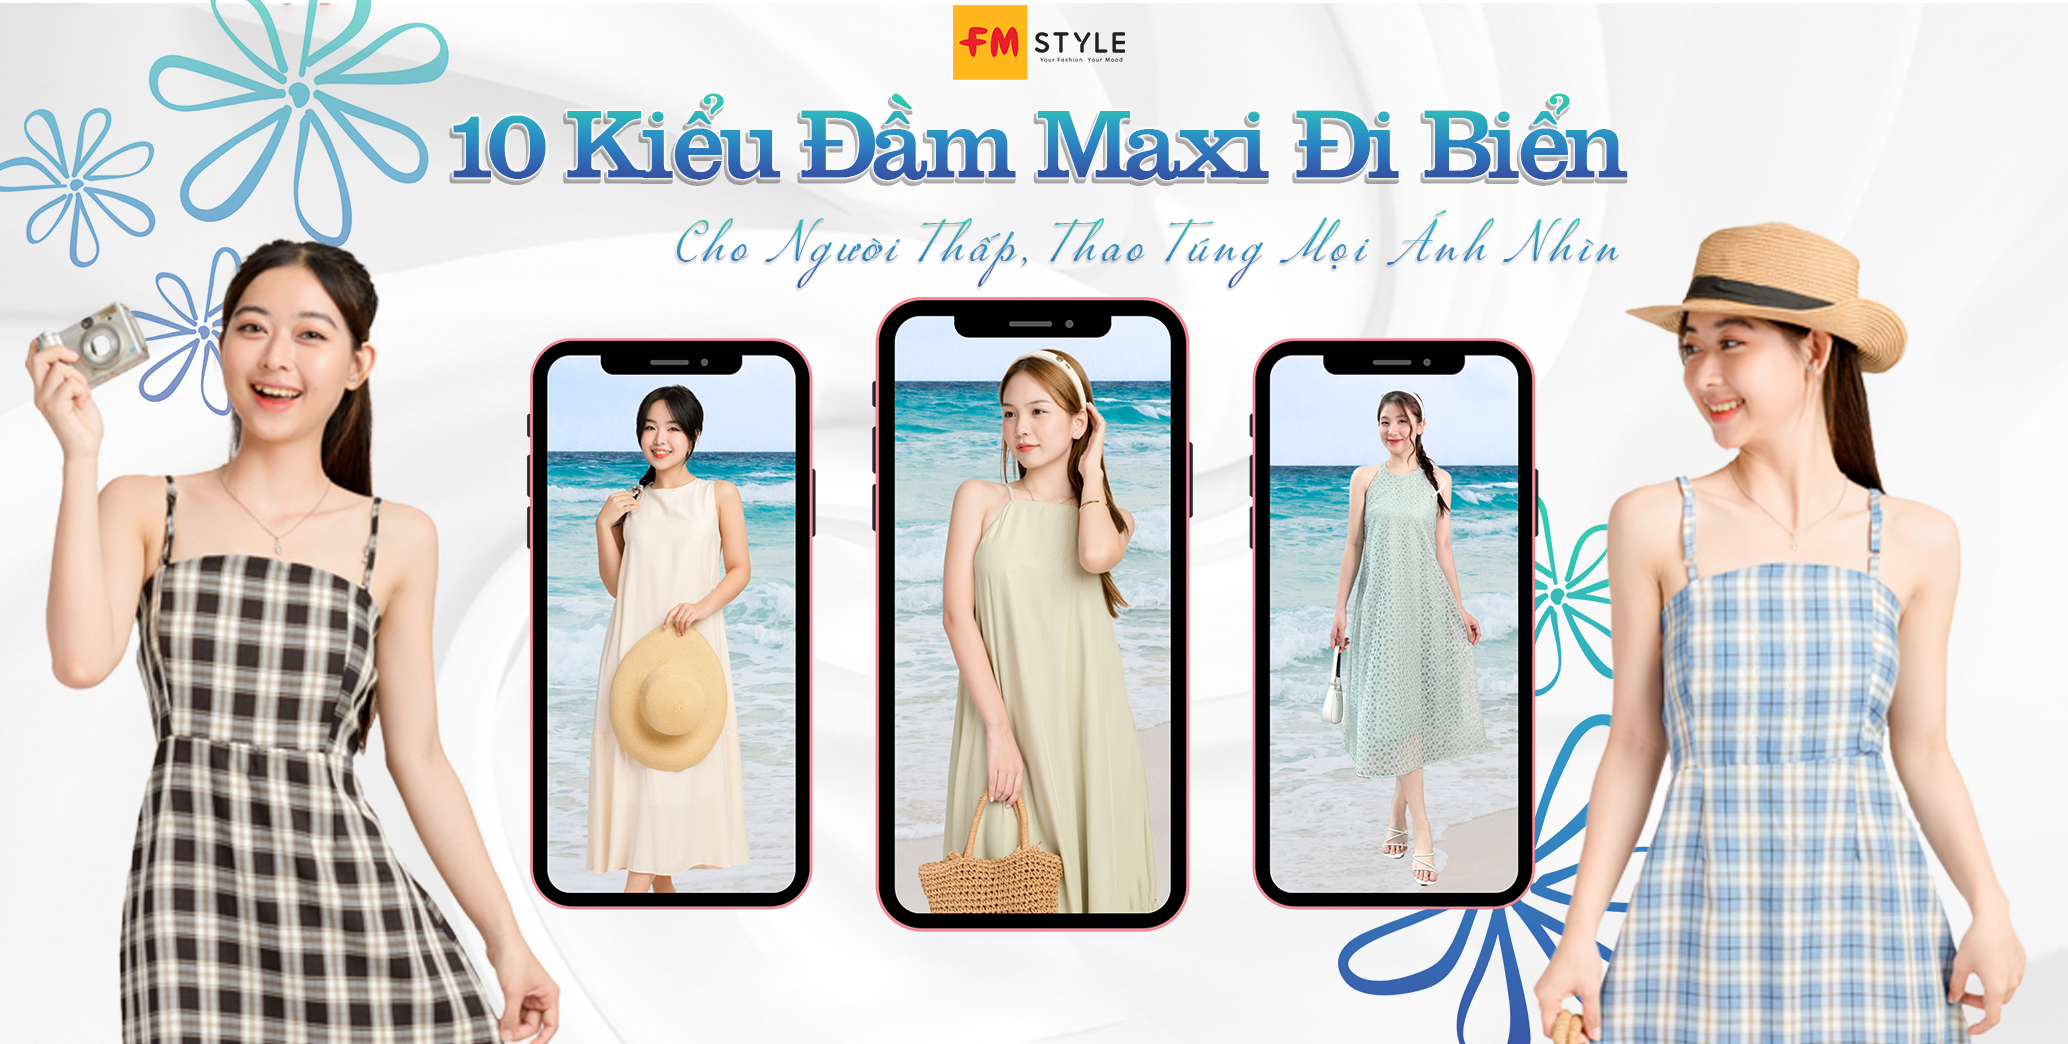 33 cách mix váy đi biển cho người béo GIẤU NHẸM nhược điểm  Austinviet  Blog